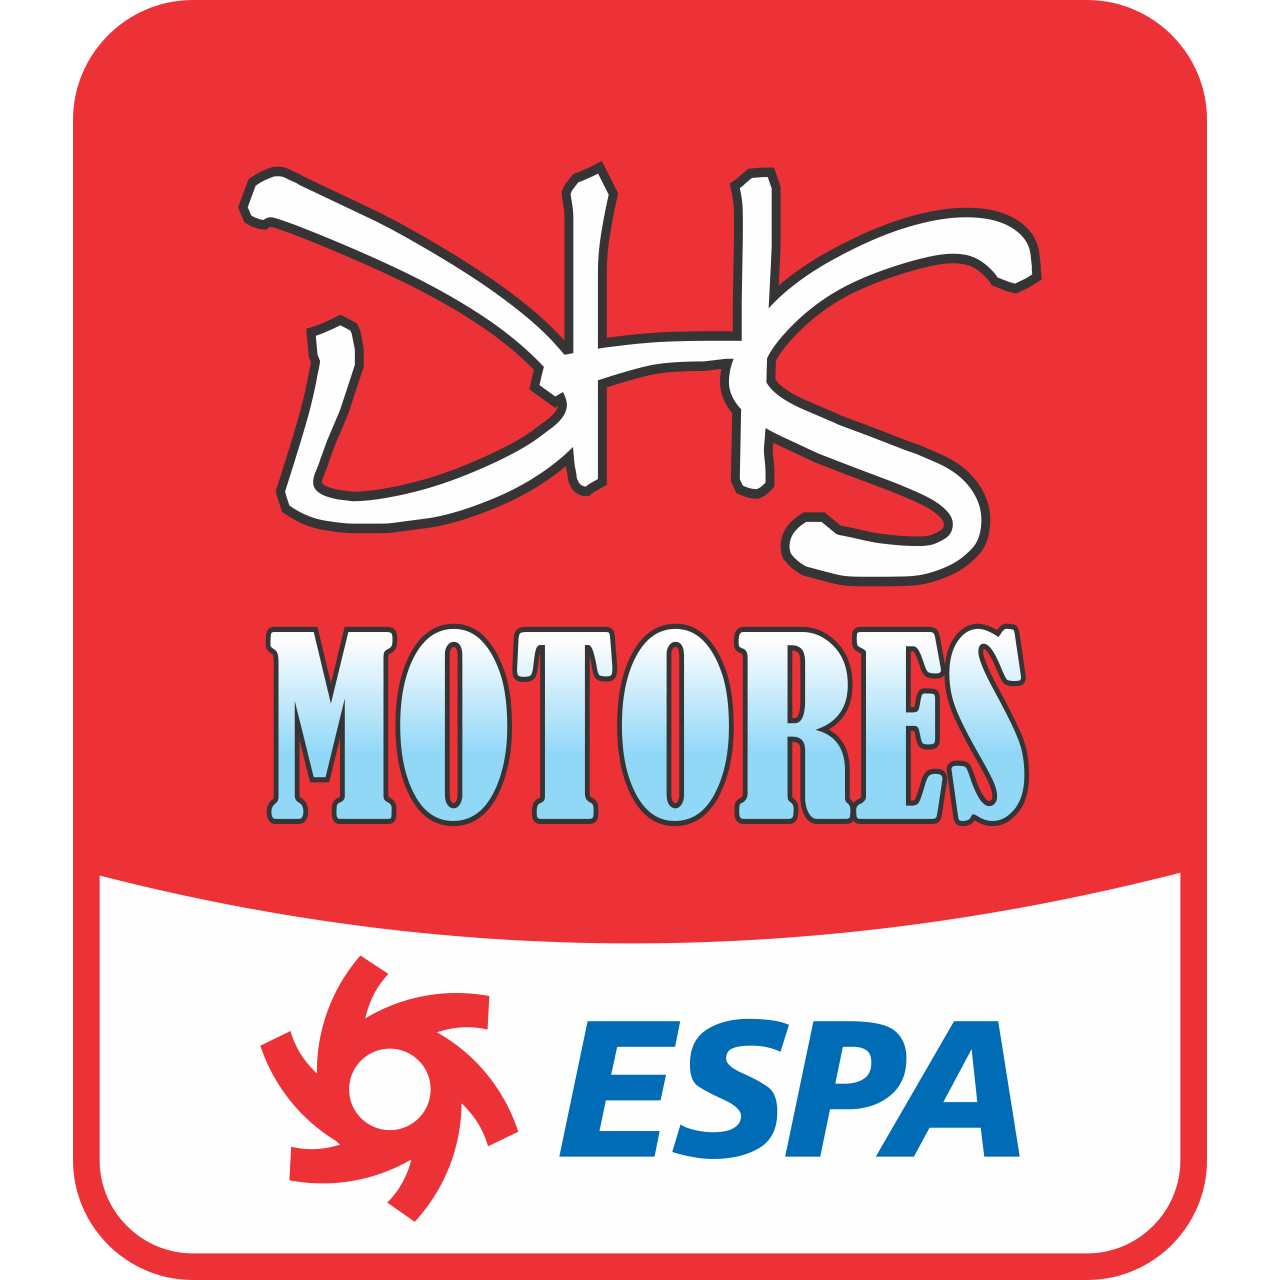 Dhs Motores - Espa Logo